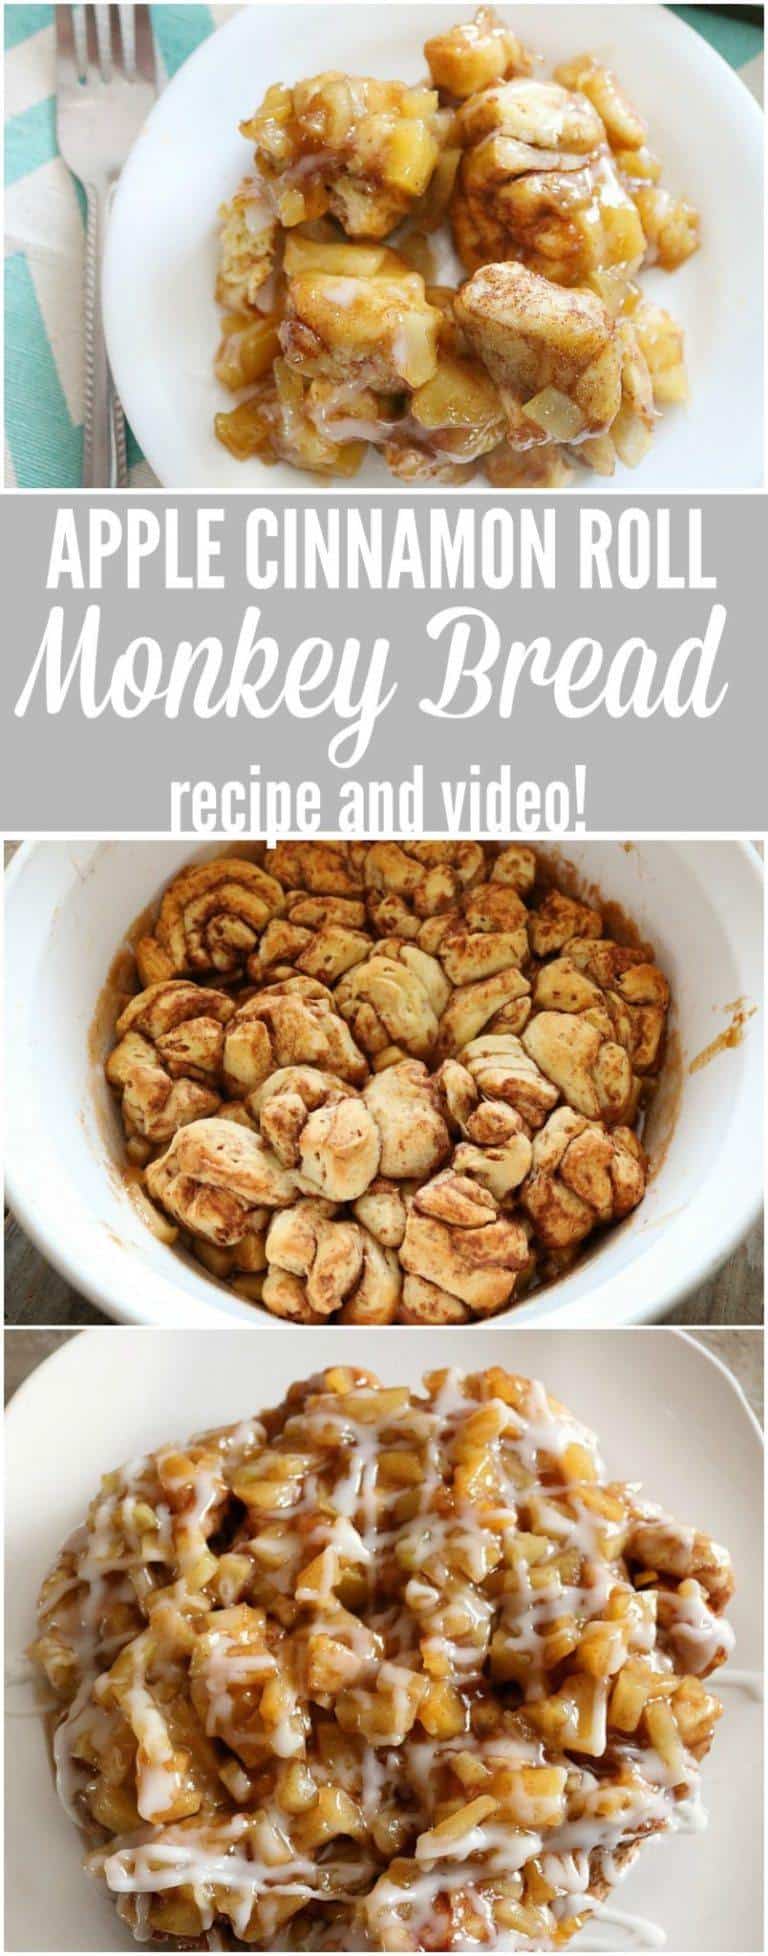 Apple Cinnamon Roll Monkey Bread Recipe Video